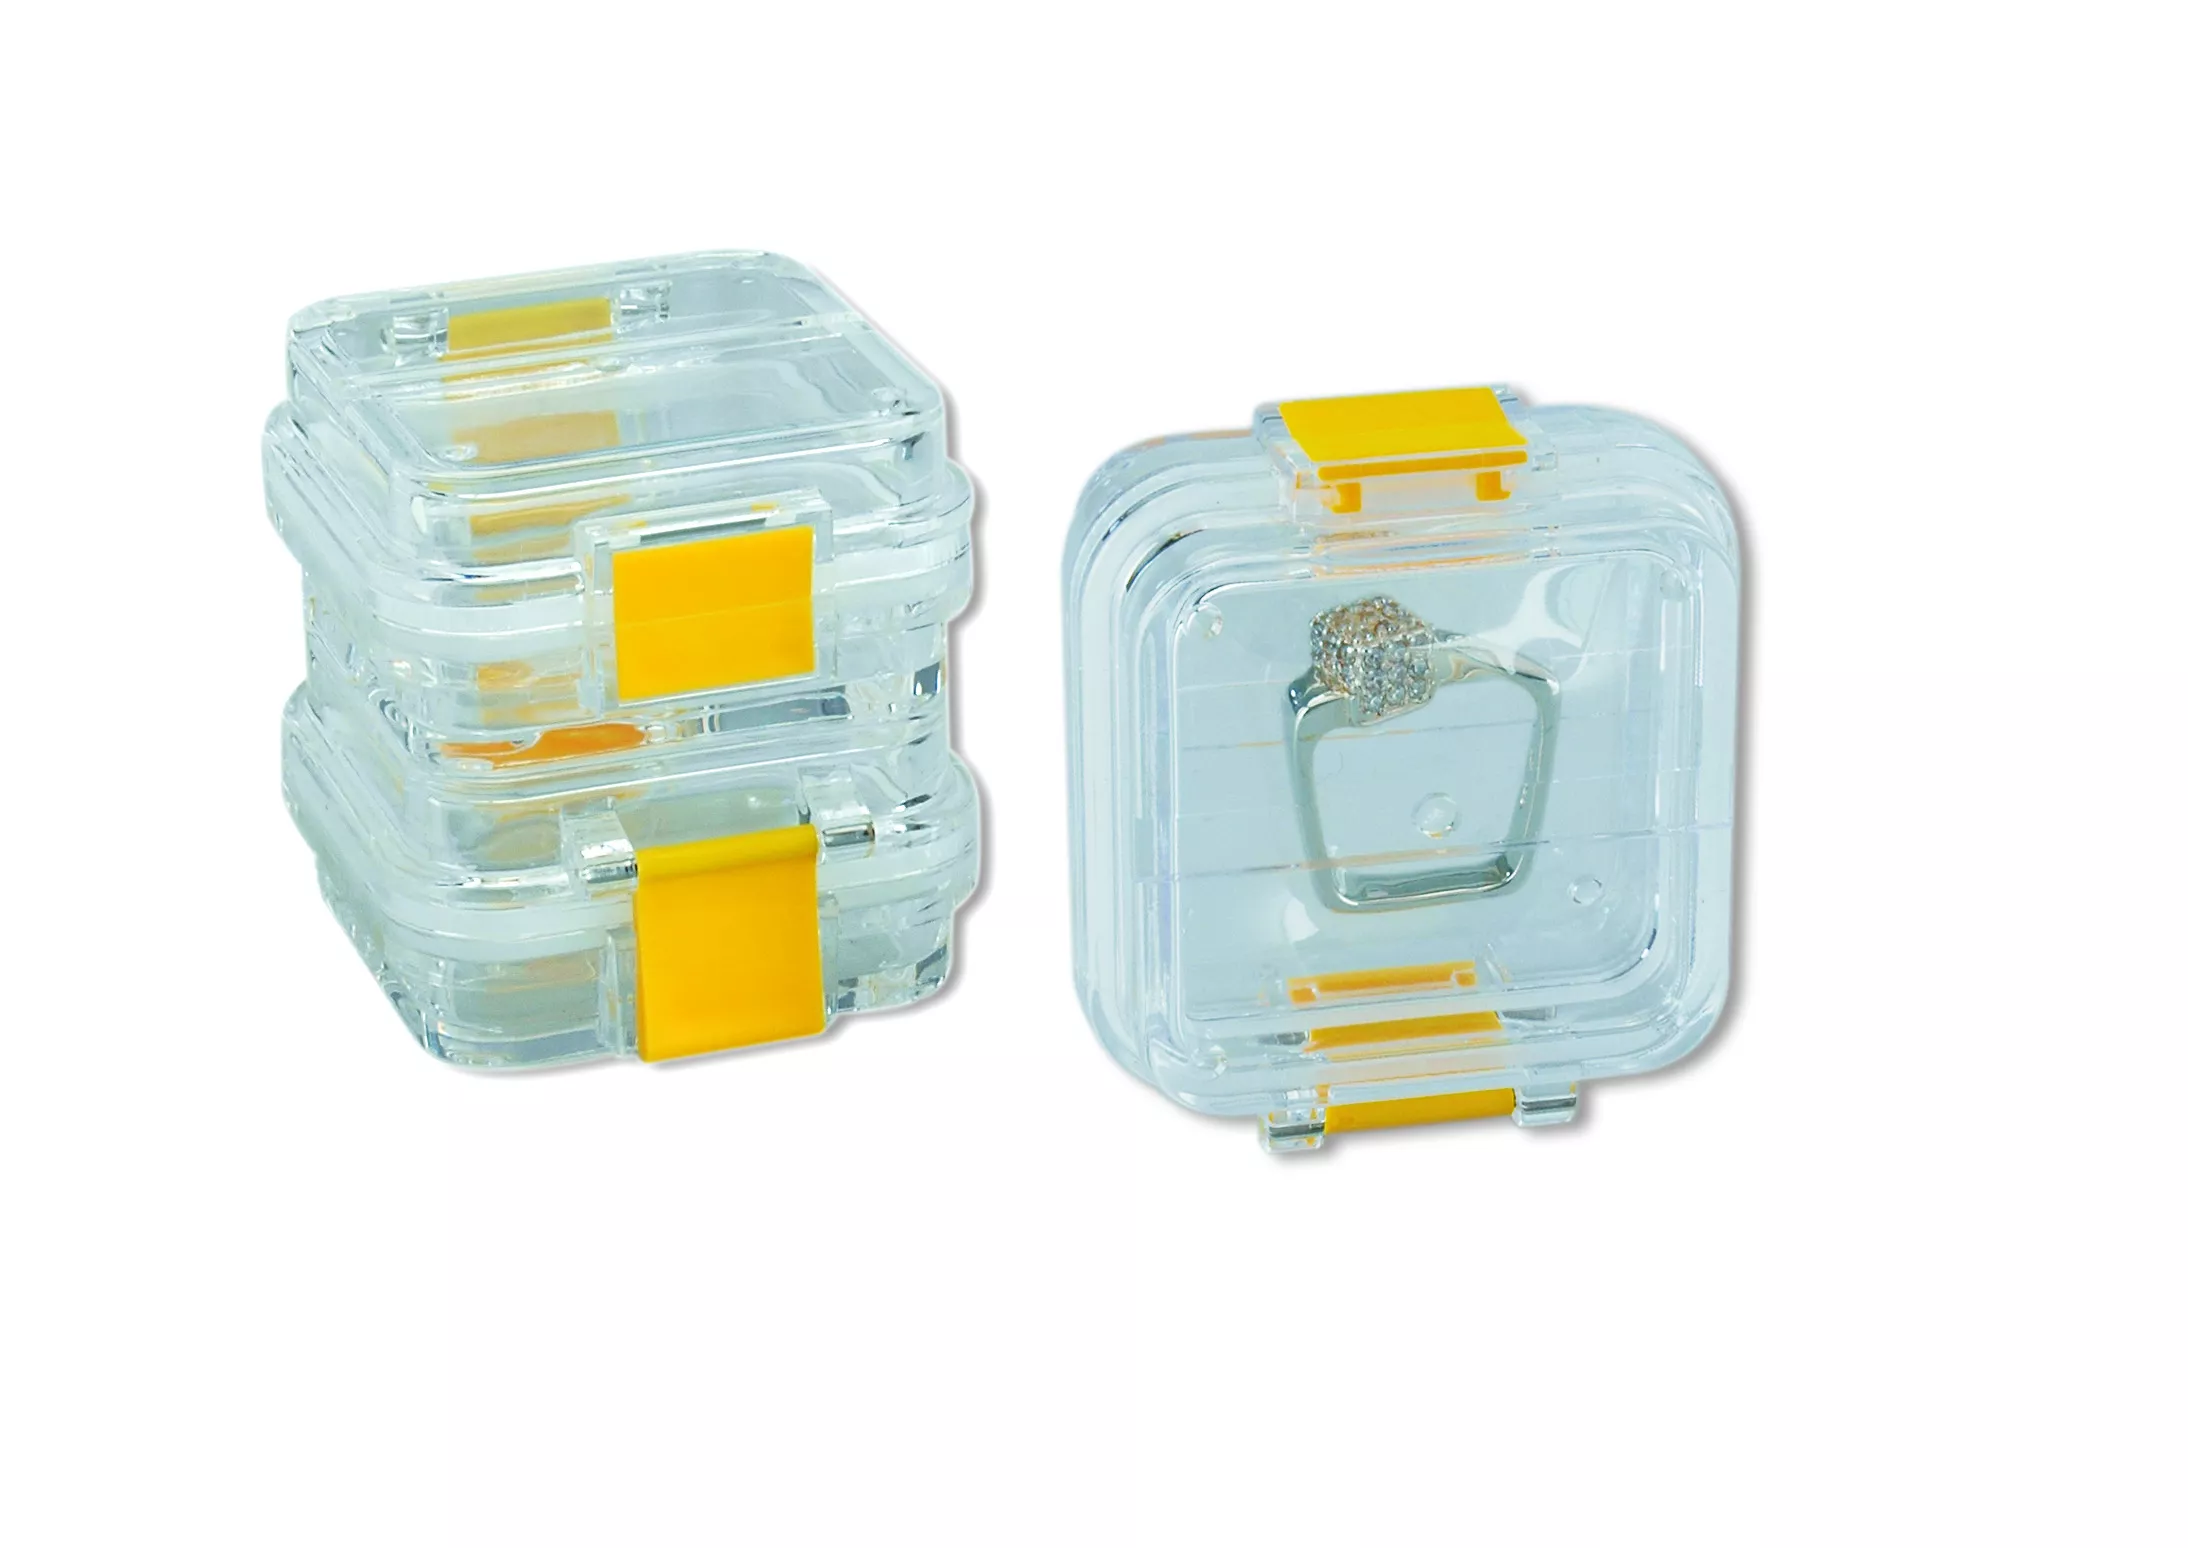 Membranbox Small - бокс для транспортировки и хранения с двумя внутренними мембранами